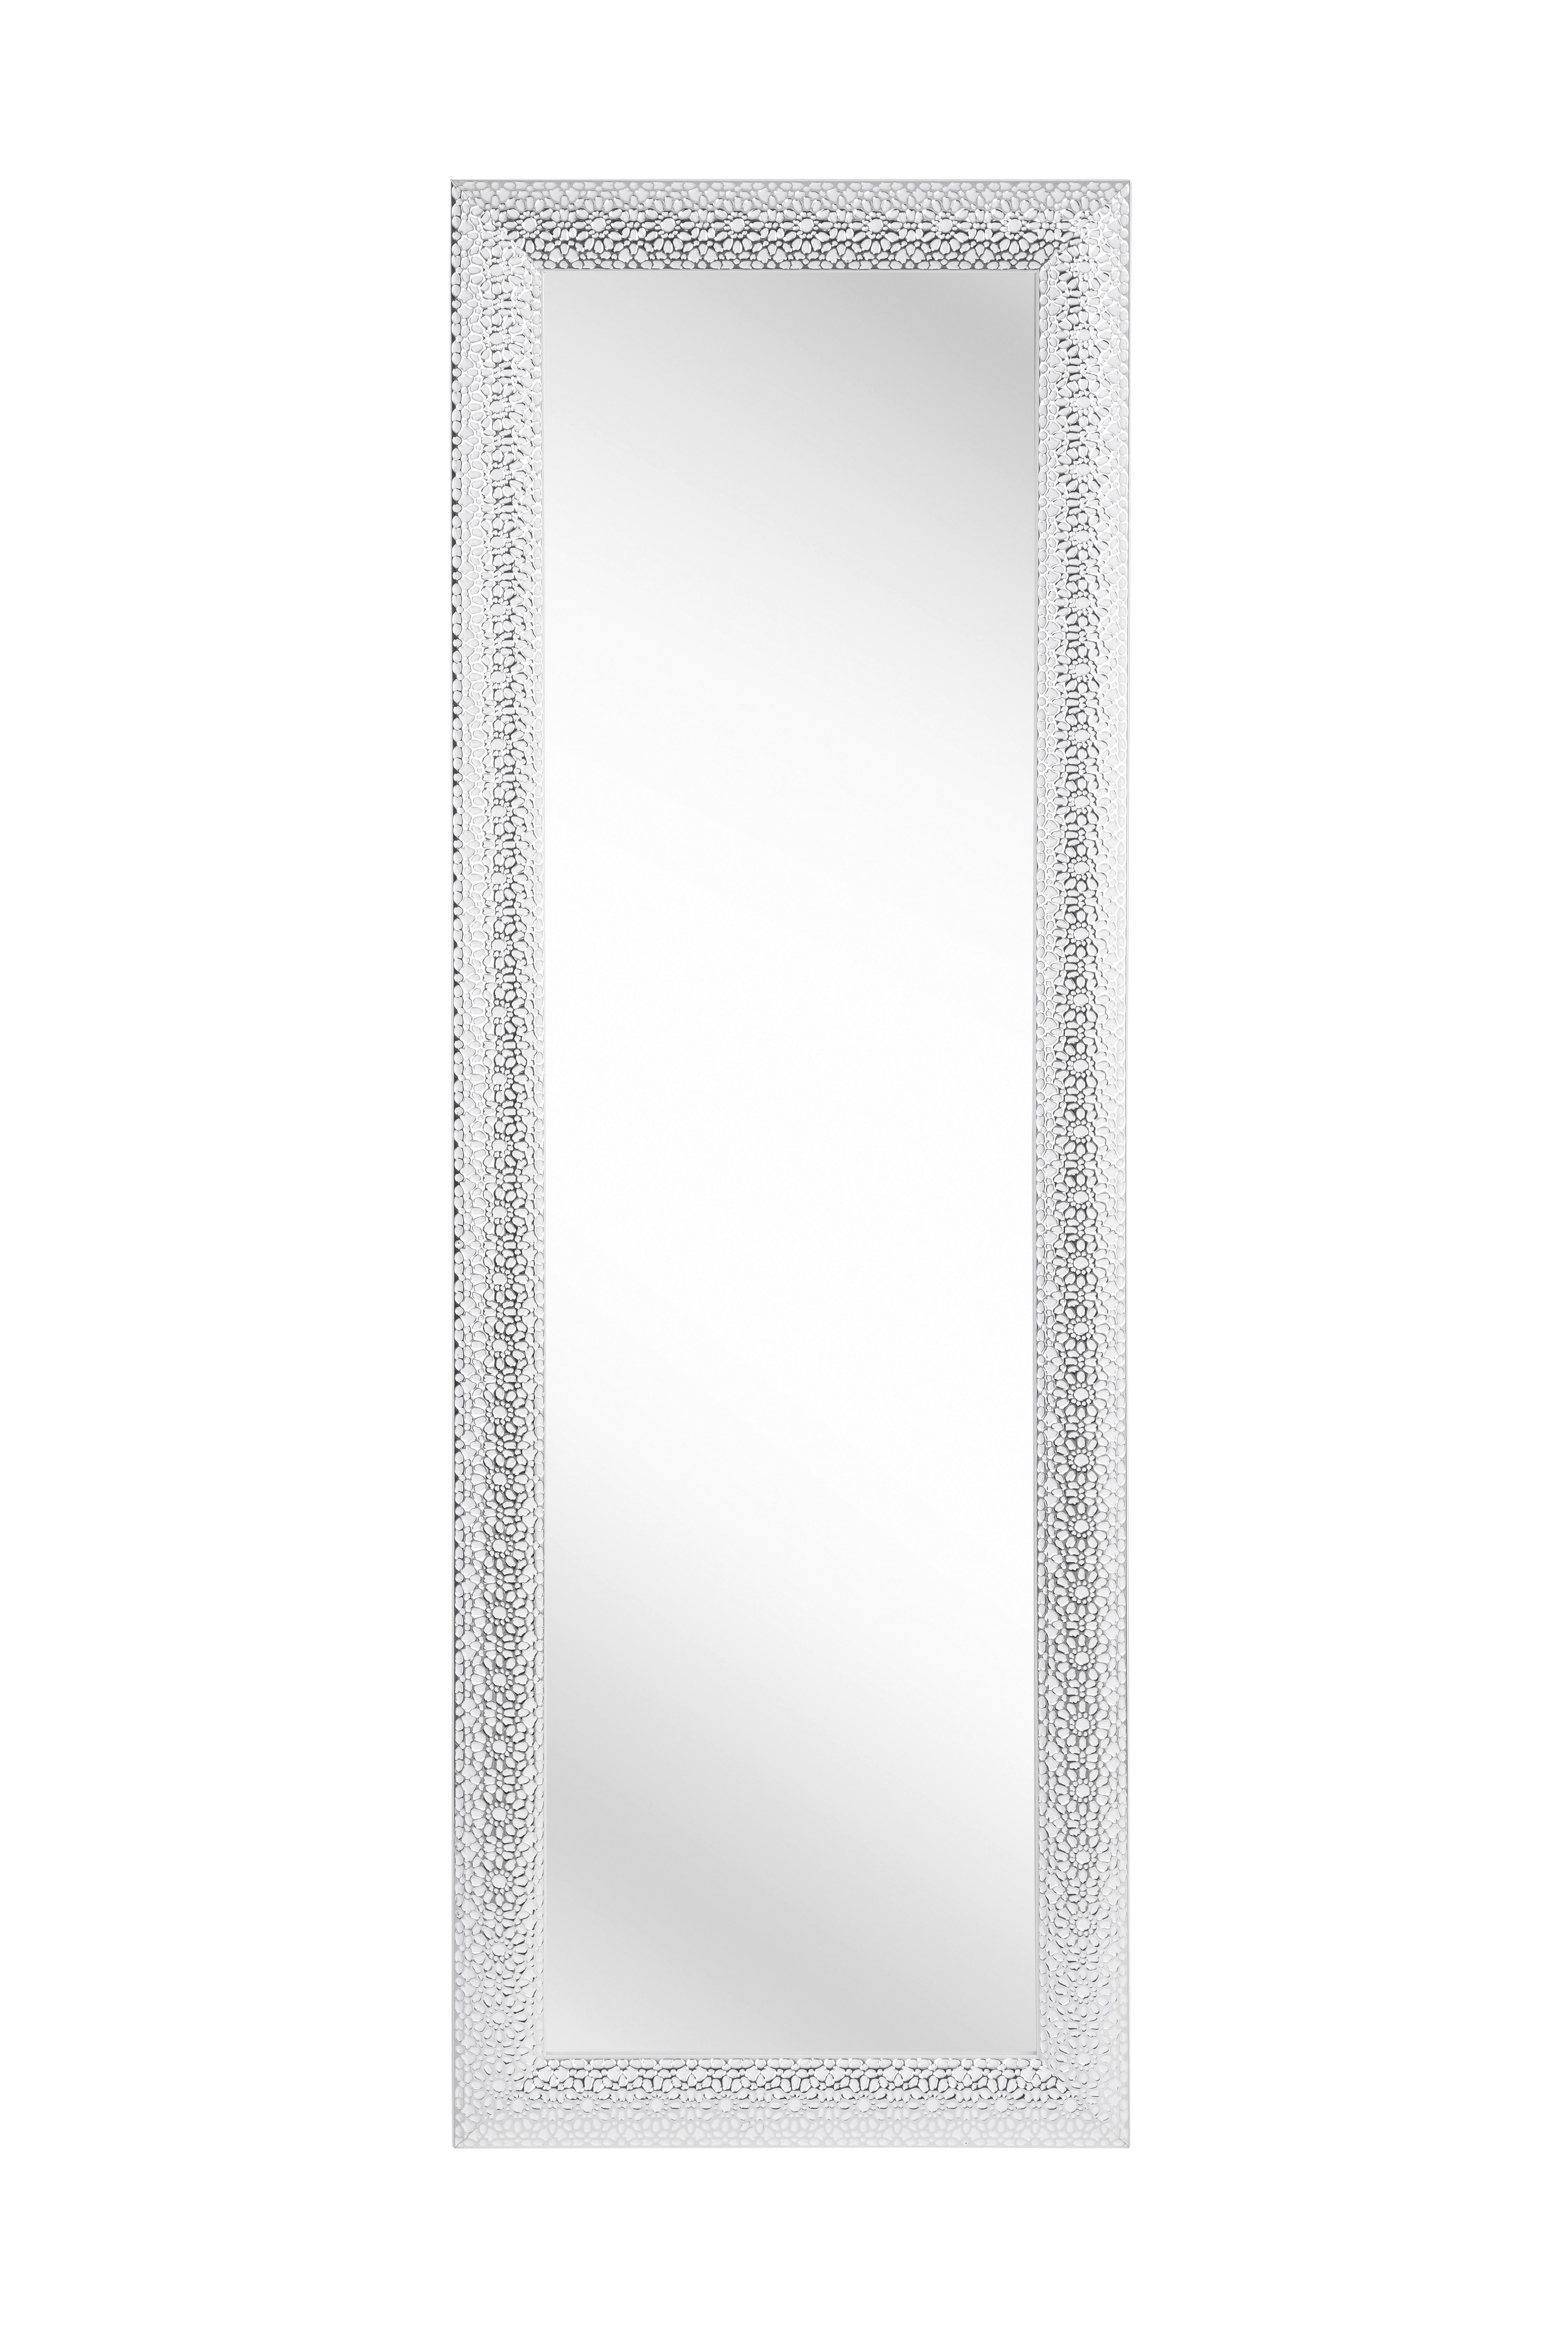 WANDSPIEGEL Silberfarben, Weiß  - Silberfarben/Weiß, LIFESTYLE, Glas/Kunststoff (50/150/3cm) - Xora